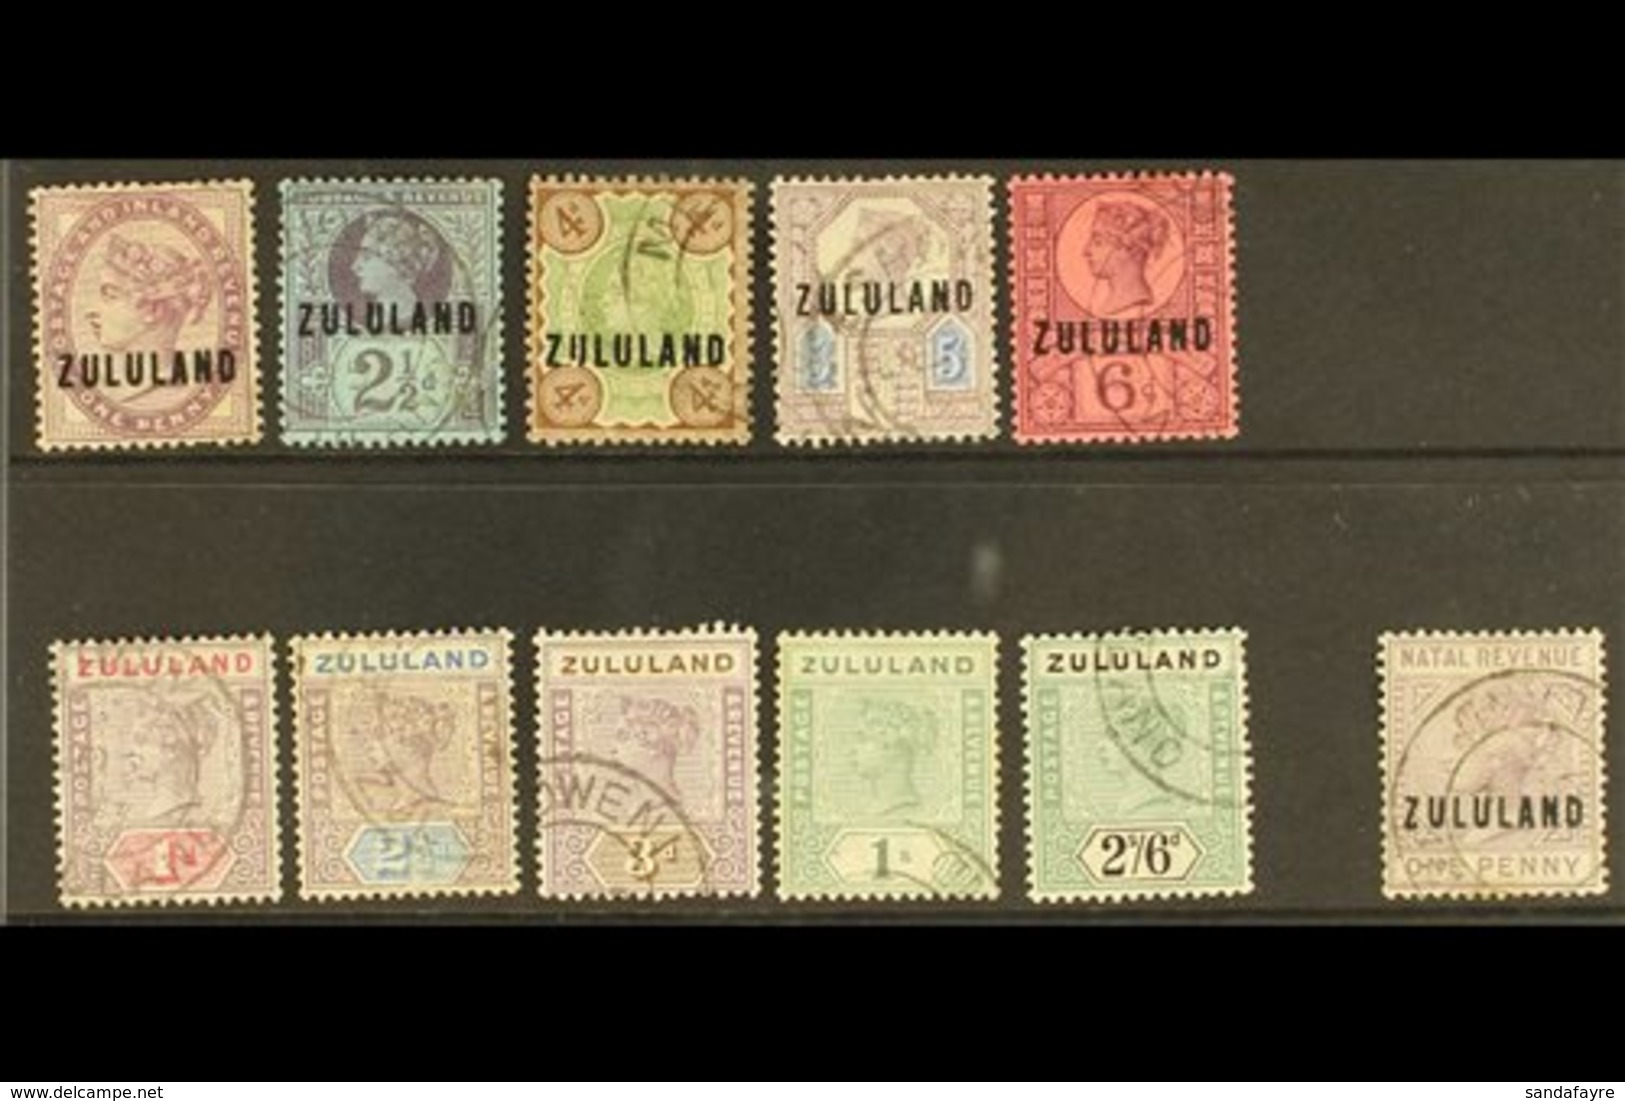 ZULULAND USED GROUP Incl. 1888-93 1d, 2½d, 4d To 6d, 1894-6 1d To 3d, 1s & 2s6d, 1891 1d Postal Fiscal, Mixed Condition, - Non Classificati